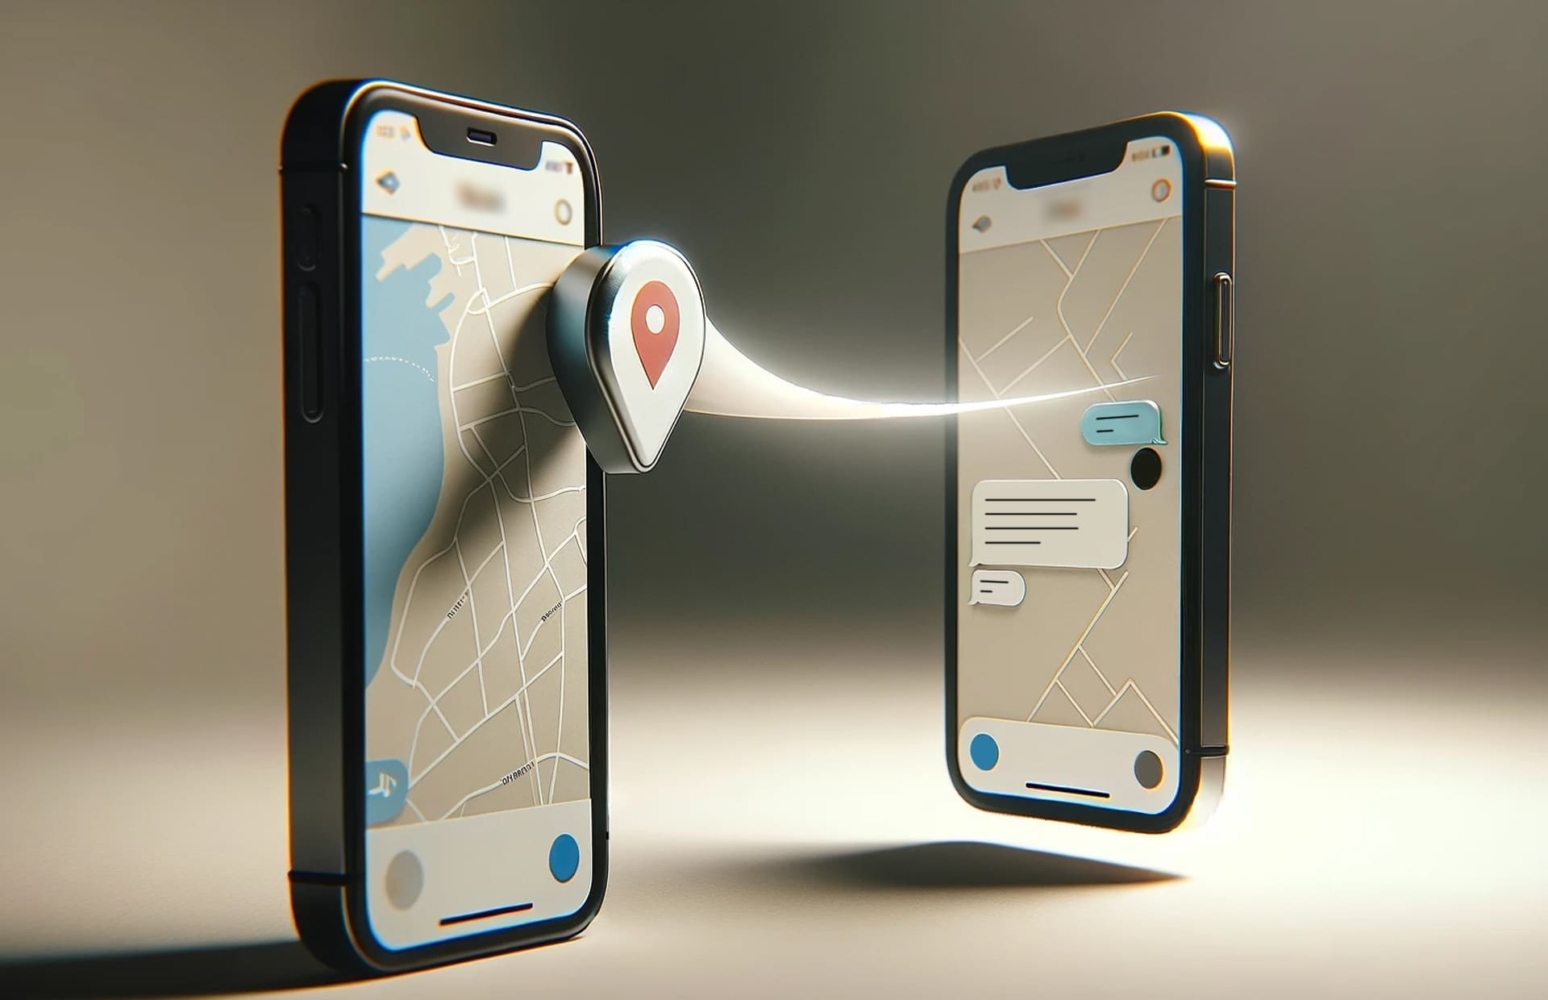 Dos teléfonos con mapas abiertos en la pantalla y un icono de localización entre ellos de teléfono a teléfono